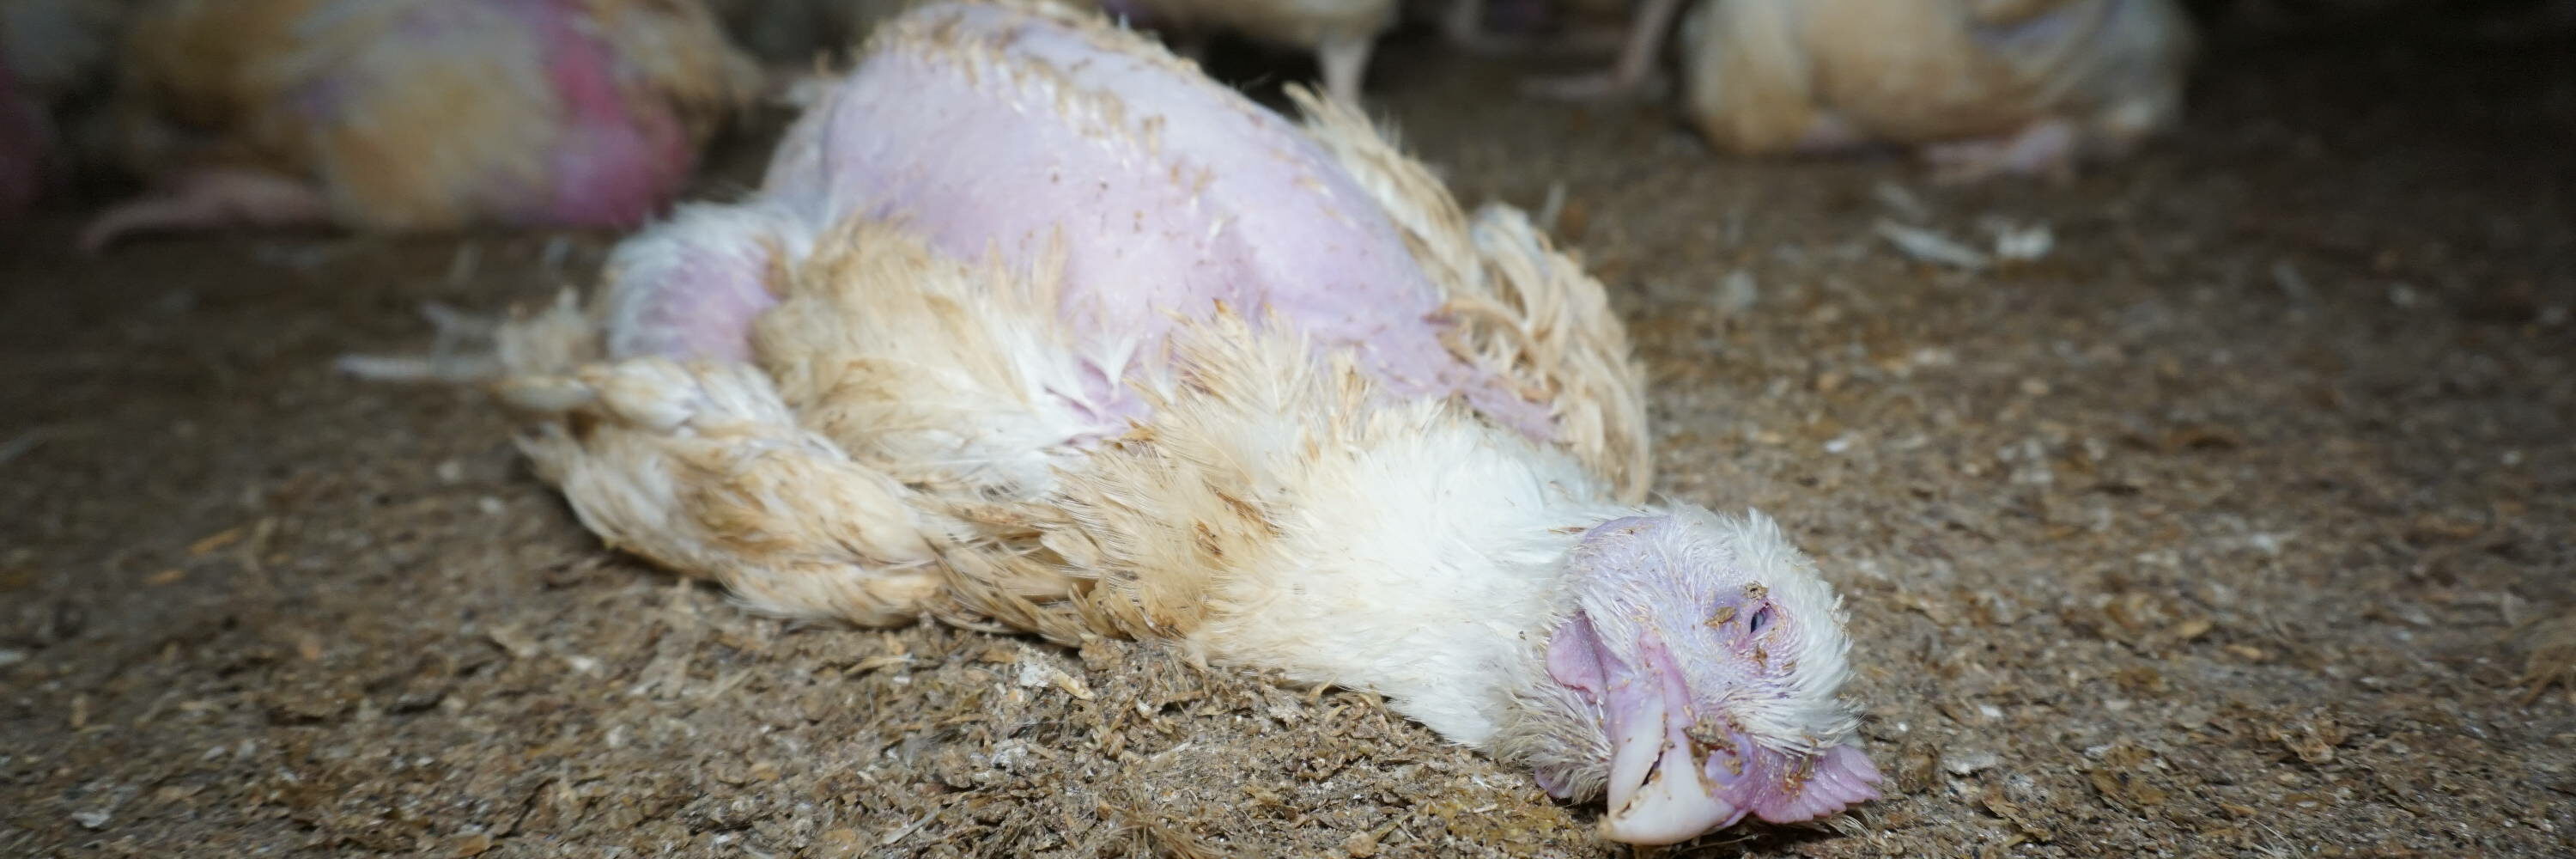 Dead chicken inside Red Tractor certified farm